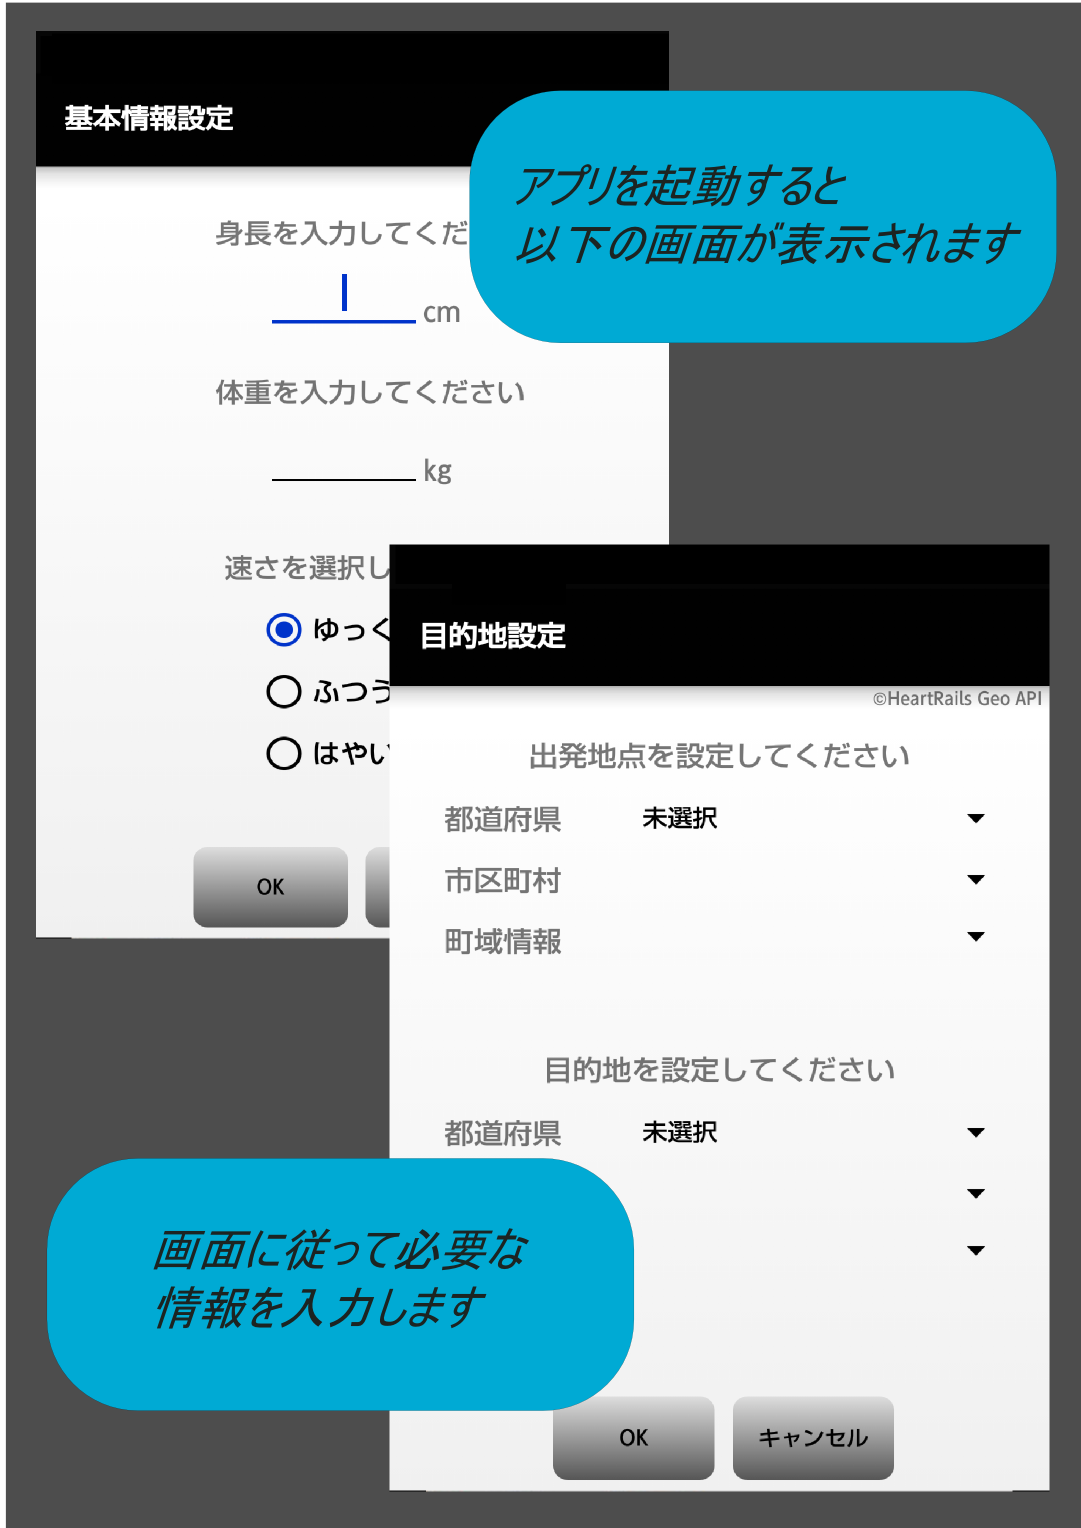 Android application 日本の果てまでウォーキング(歩数計) screenshort